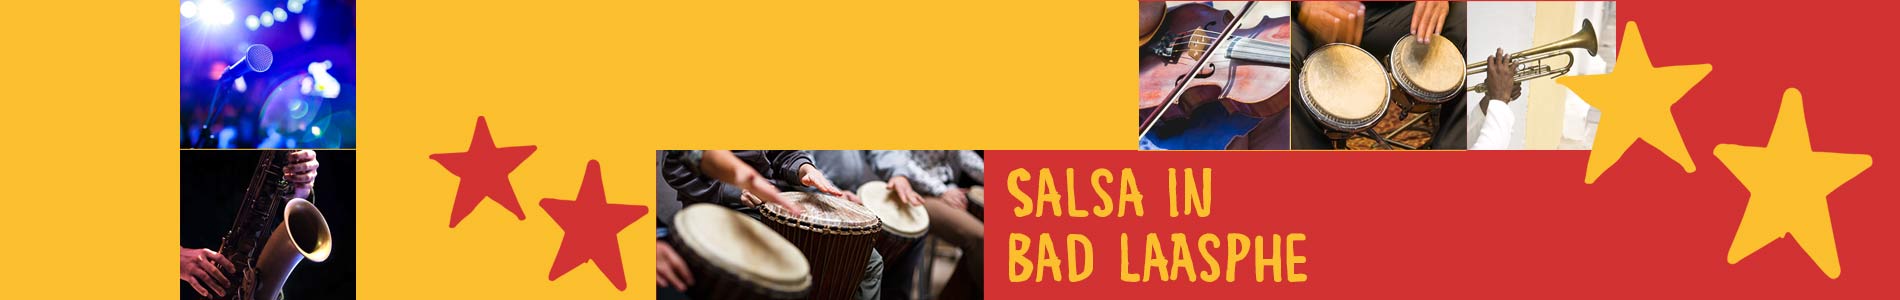 Salsa in Bad Laasphe – Salsa lernen und tanzen, Tanzkurse, Partys, Veranstaltungen